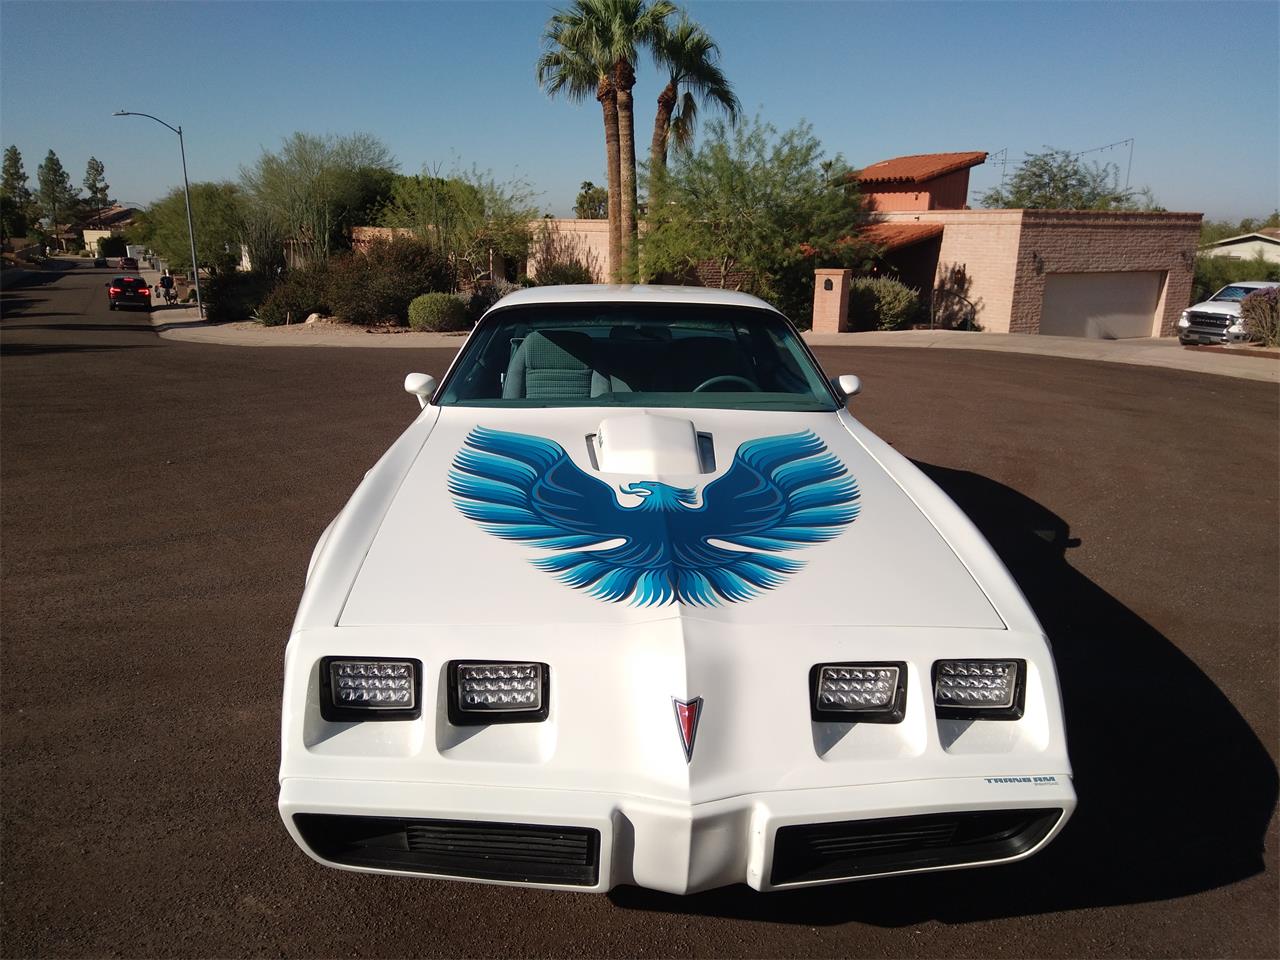 For Sale: 1979 Pontiac Firebird Trans Am WS6 in PHOENIX, Arizona for sale in Phoenix, AZ